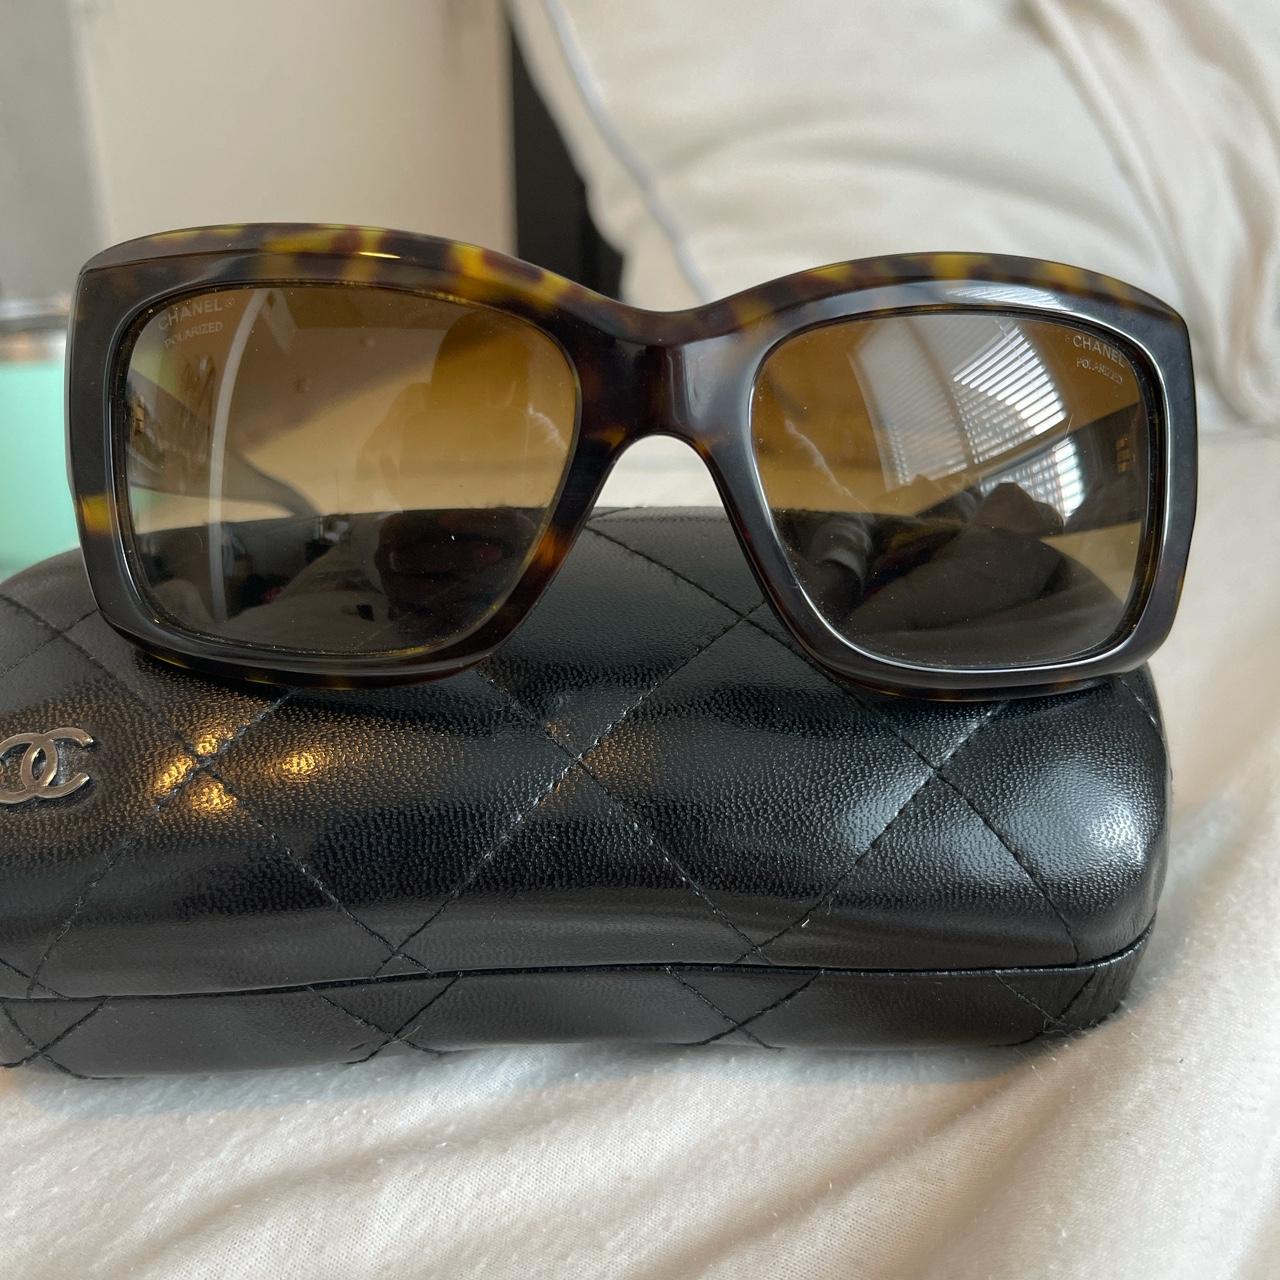 Vintage Chanel Shield Sunglasses. In good vintage - Depop